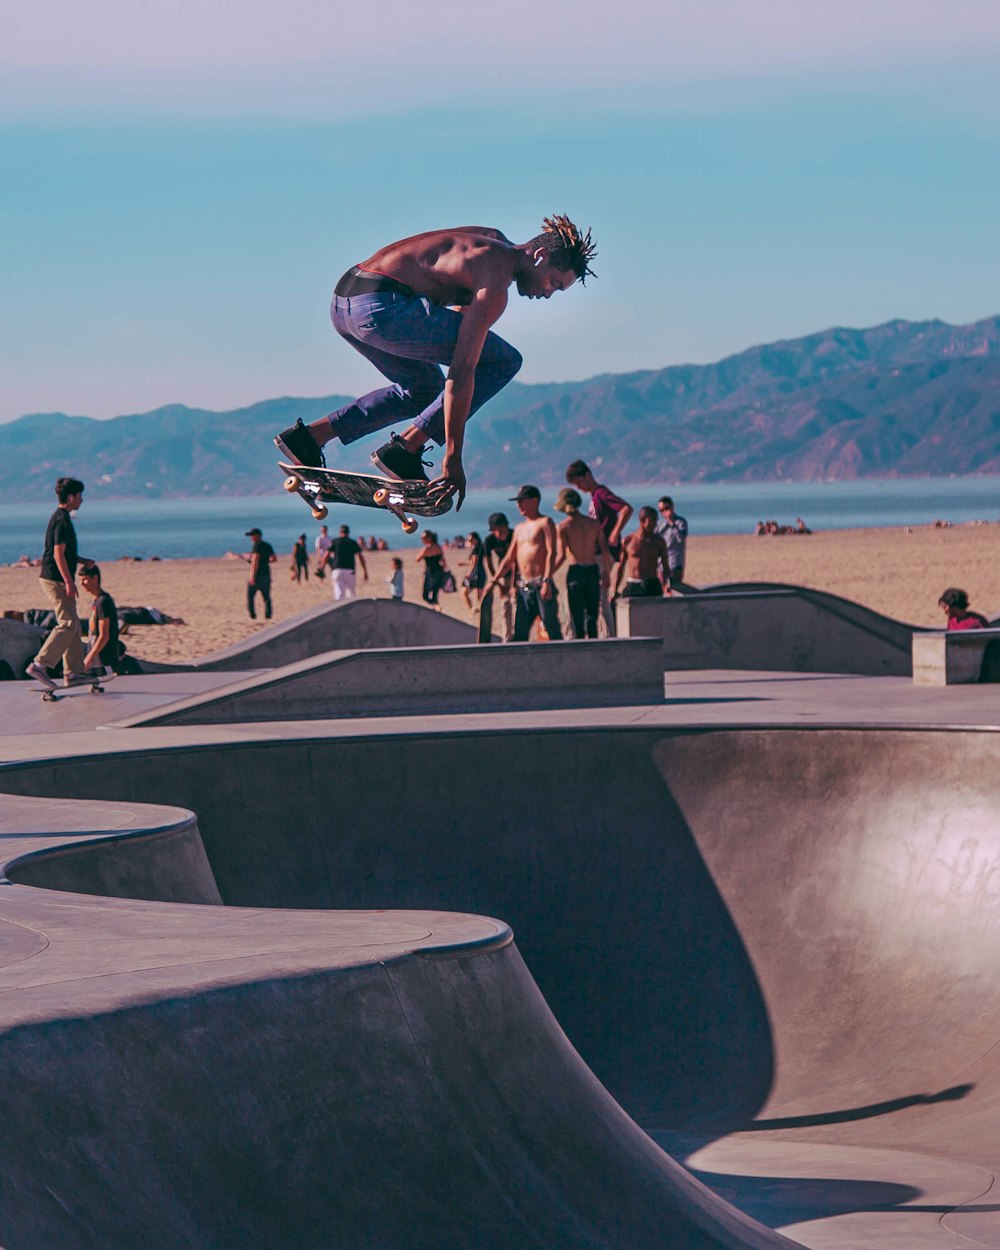 Zeitrafferfoto eines Oben-ohne-Mannes, der im Skatepark Skateboard fährt